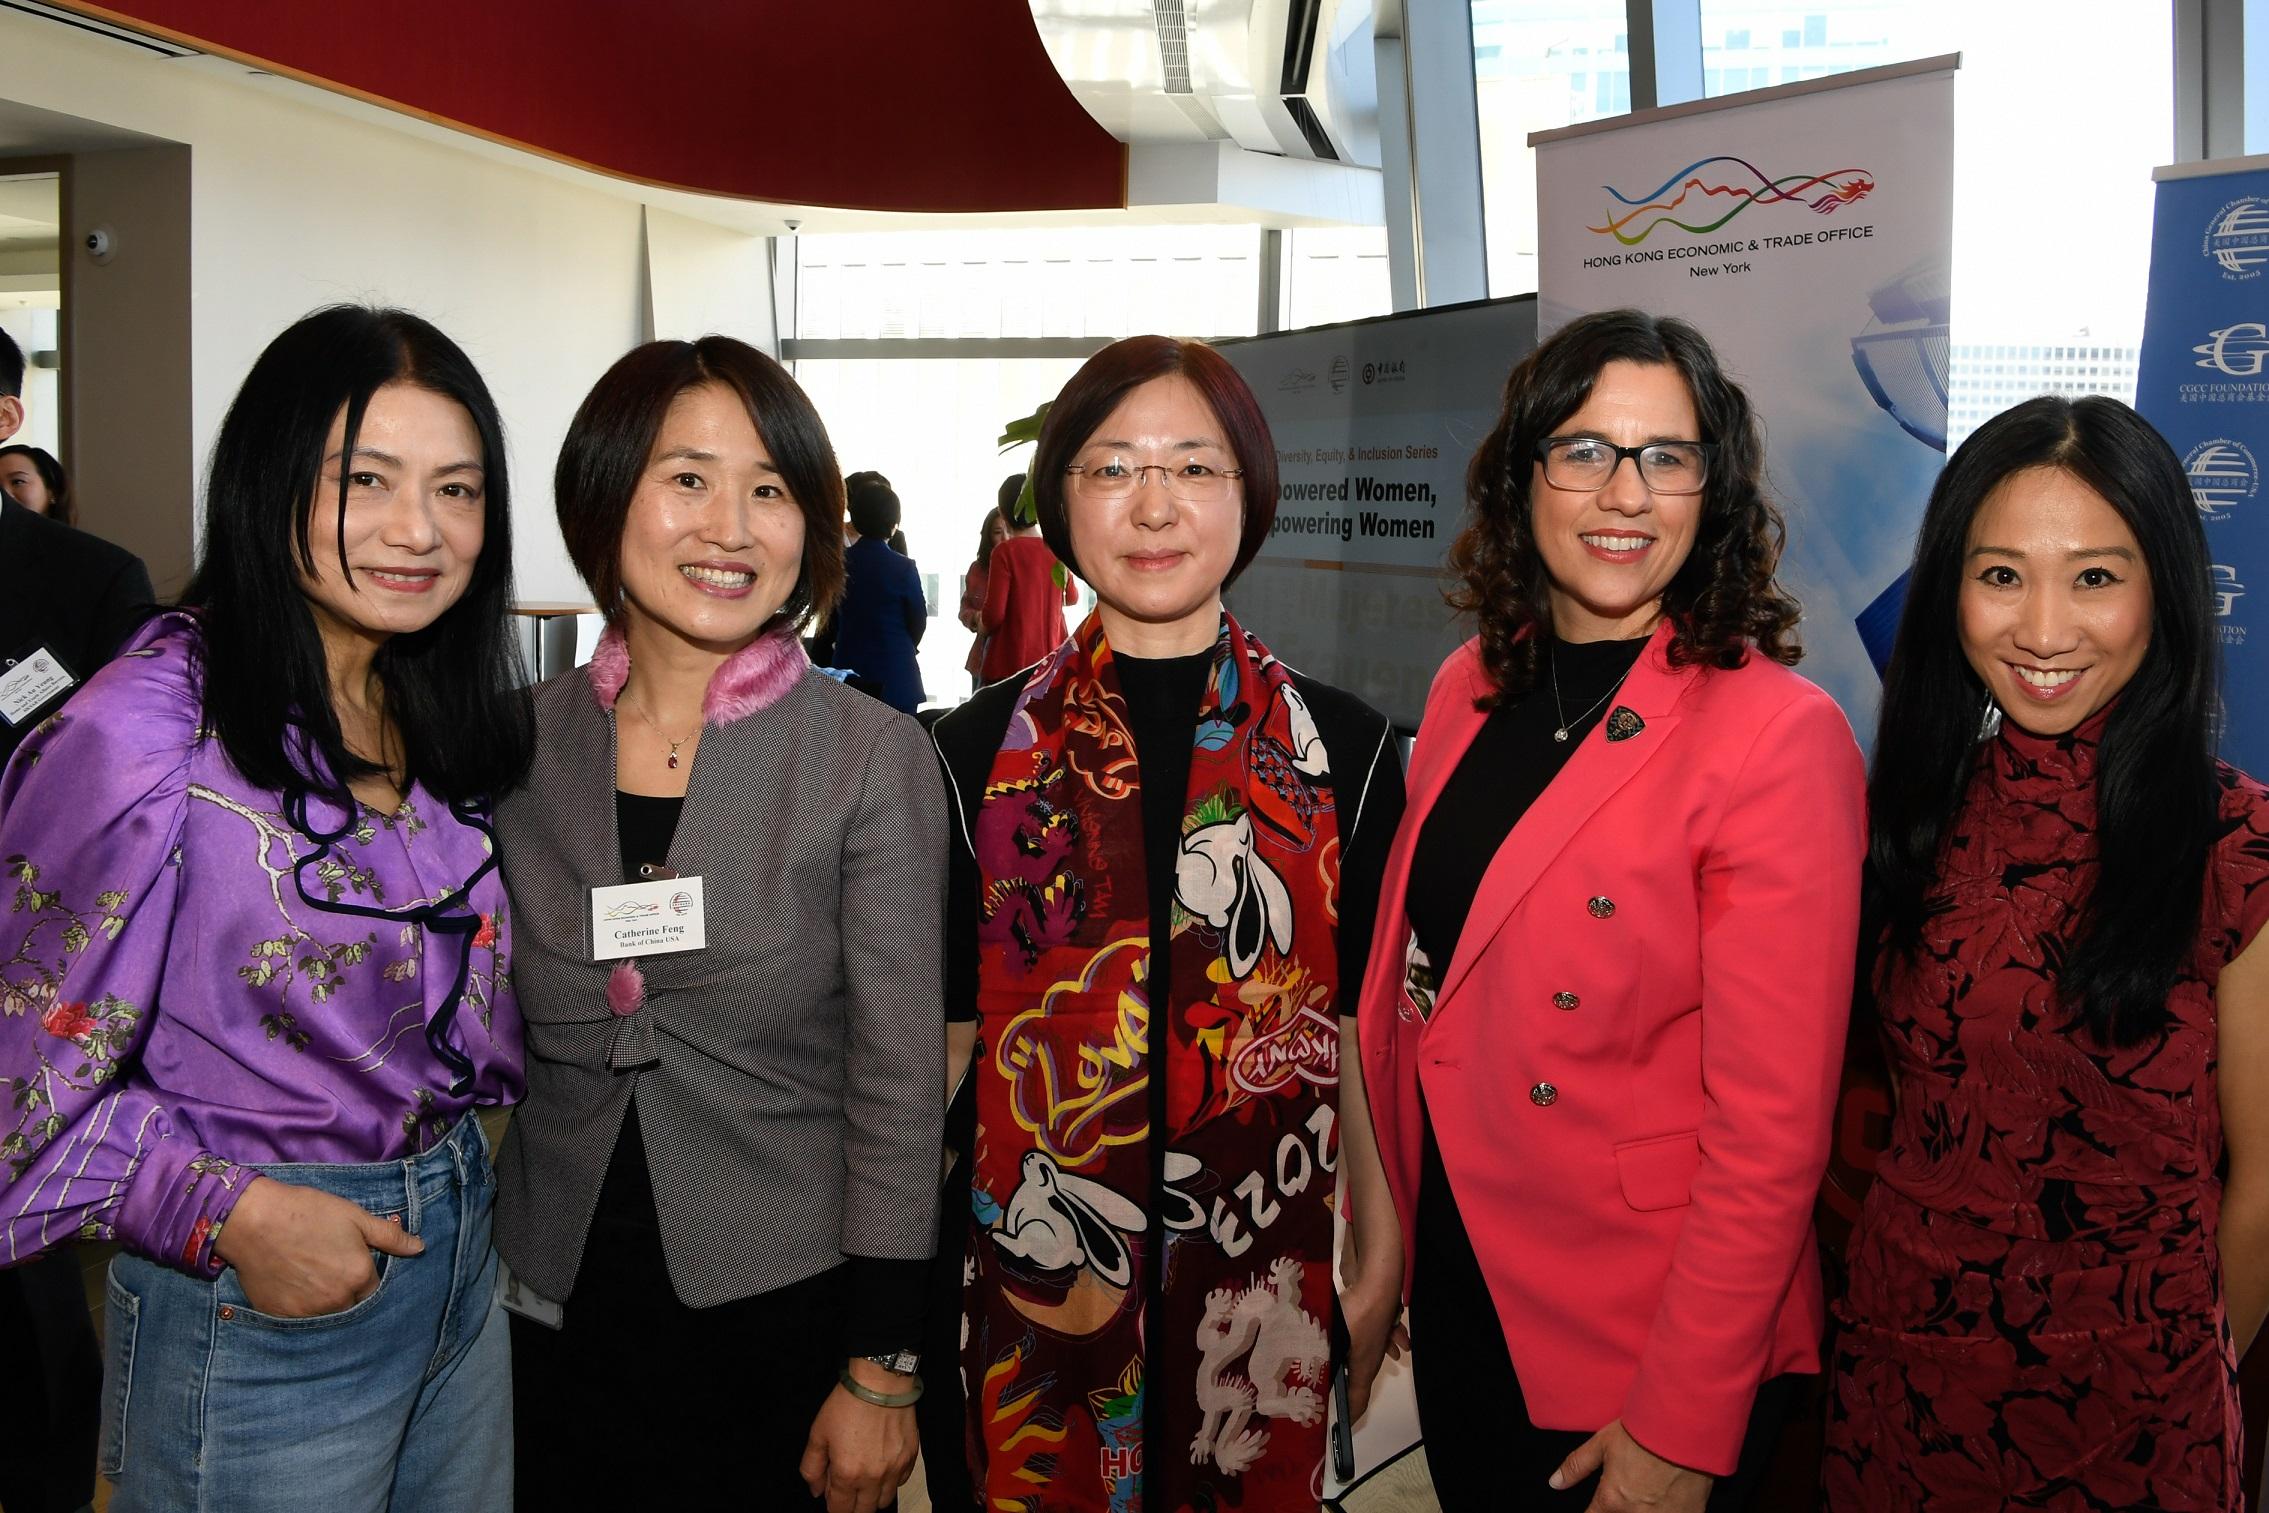 为庆祝国际妇女节，香港驻纽约经济贸易办事处（香港驻纽约经贸办）于三月八日（纽约时间）与美国中国总商会合办以「妇女赋权．提升女性地位」为主题的午餐会，吸引超过40位来自纽约智库、商界、创意产业和体育界的女性领袖参加。（由左至右）著名时装设计师Vivienne Tam、中国银行高级副总裁冯玉慧、美国中国总商会副主席兼中国工商银行美国区域管理委员会主席张剑宇、NBA布鲁克林篮网队全球合作伙伴关系执行副总裁Catherine Carlson和香港驻纽约经贸办处长聂继恩都有在会上发言。